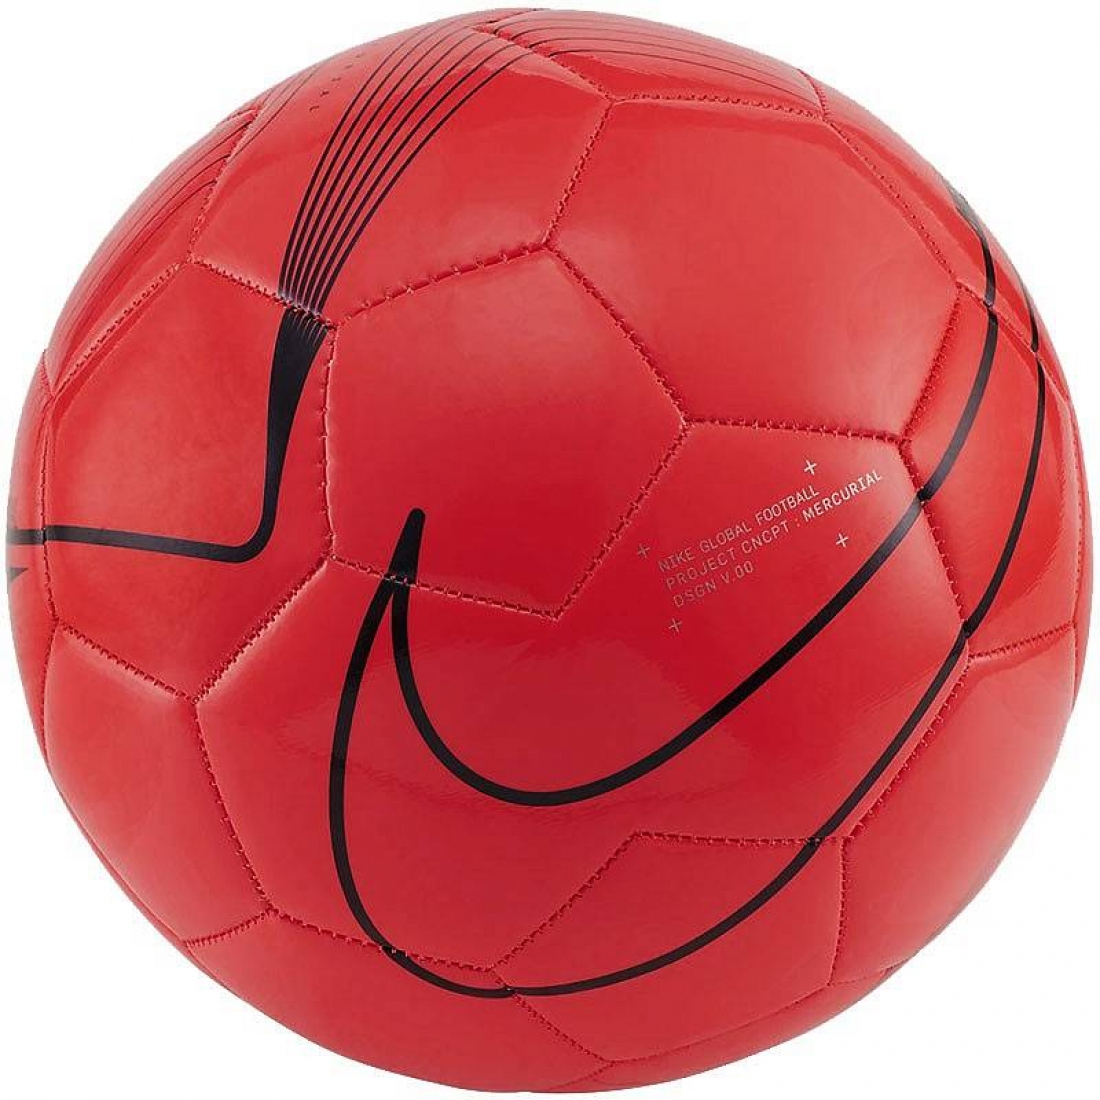 Мяч футбольный NIKE Mercurial Fade, цвет красный, чёрный, размер 4